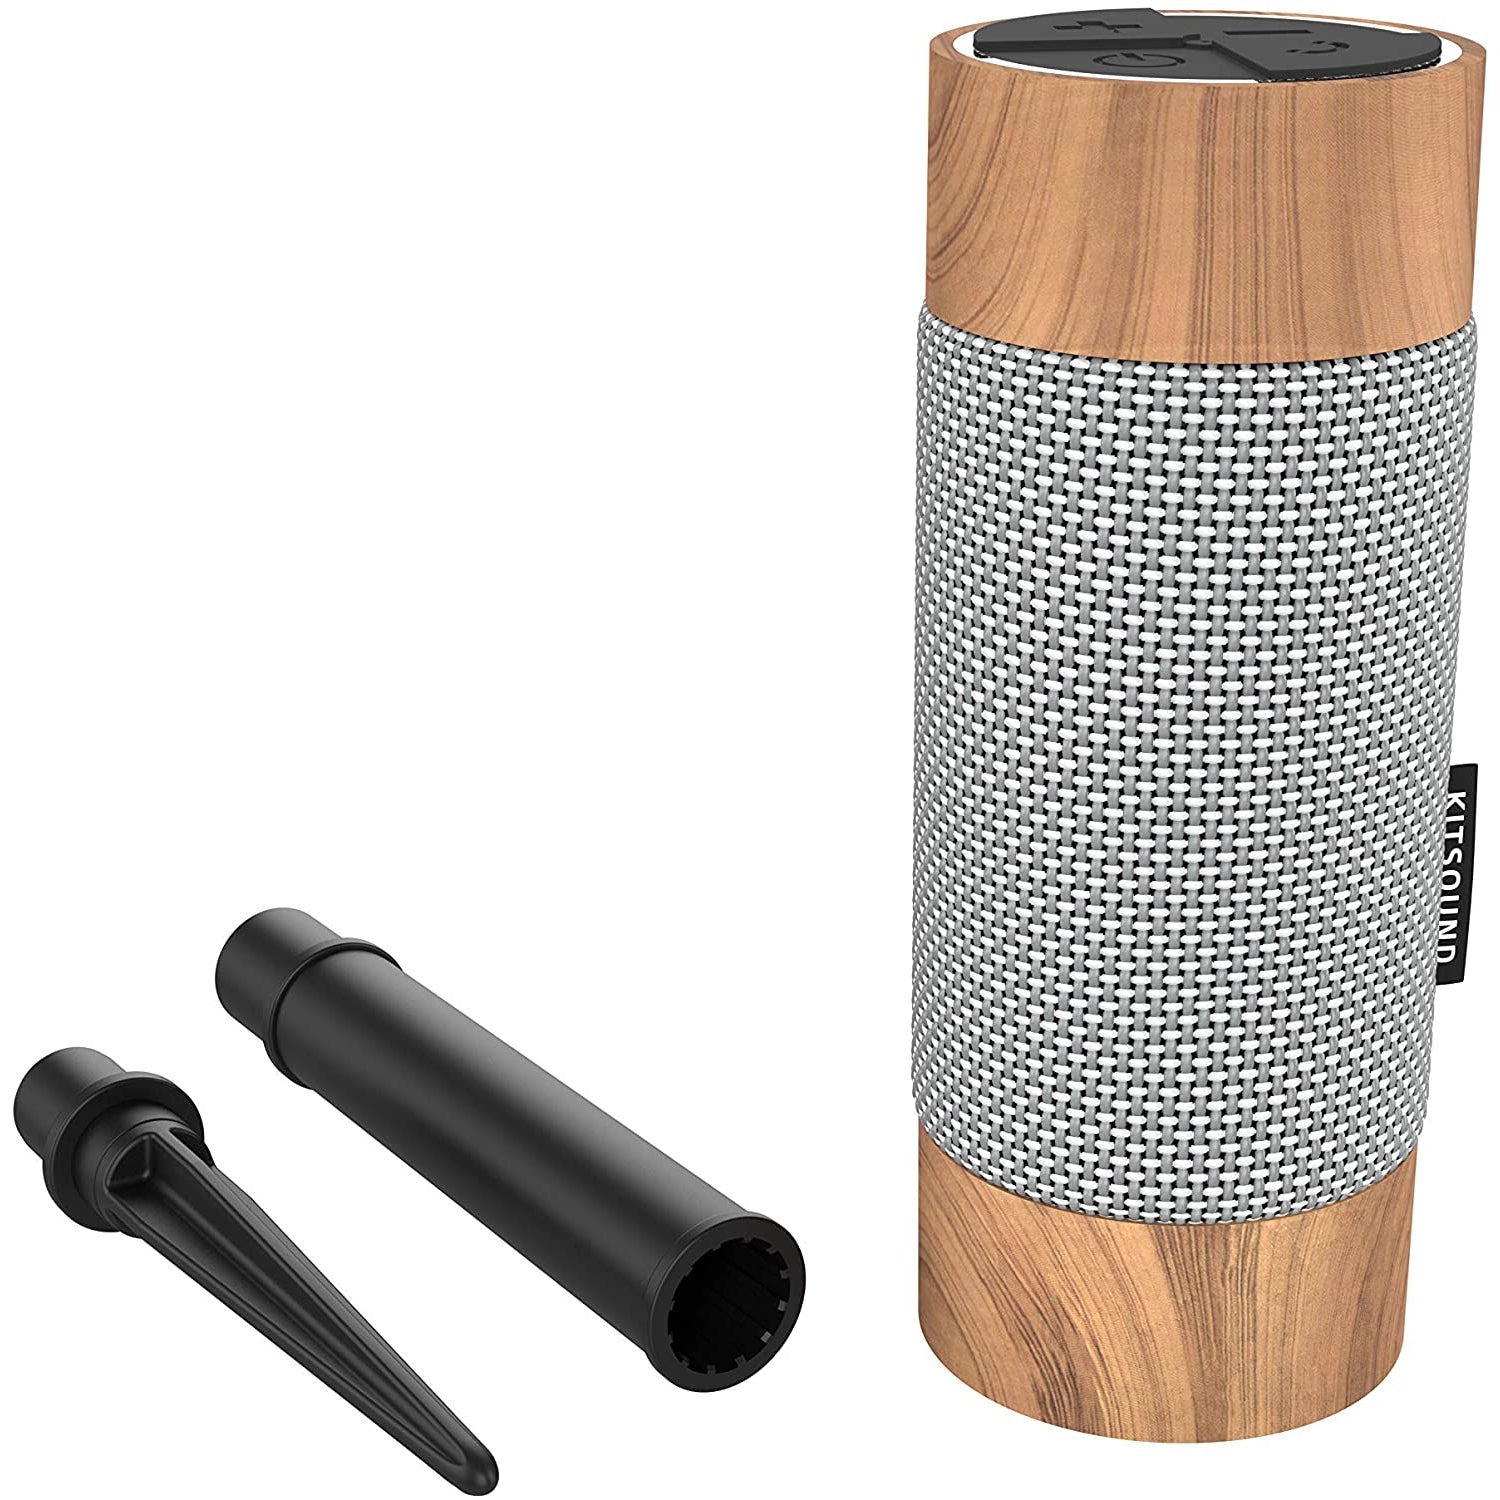 KitSound Diggit Outdoor Bluetooth Garden Speaker. Silver/Wood - Refurbished Pristine